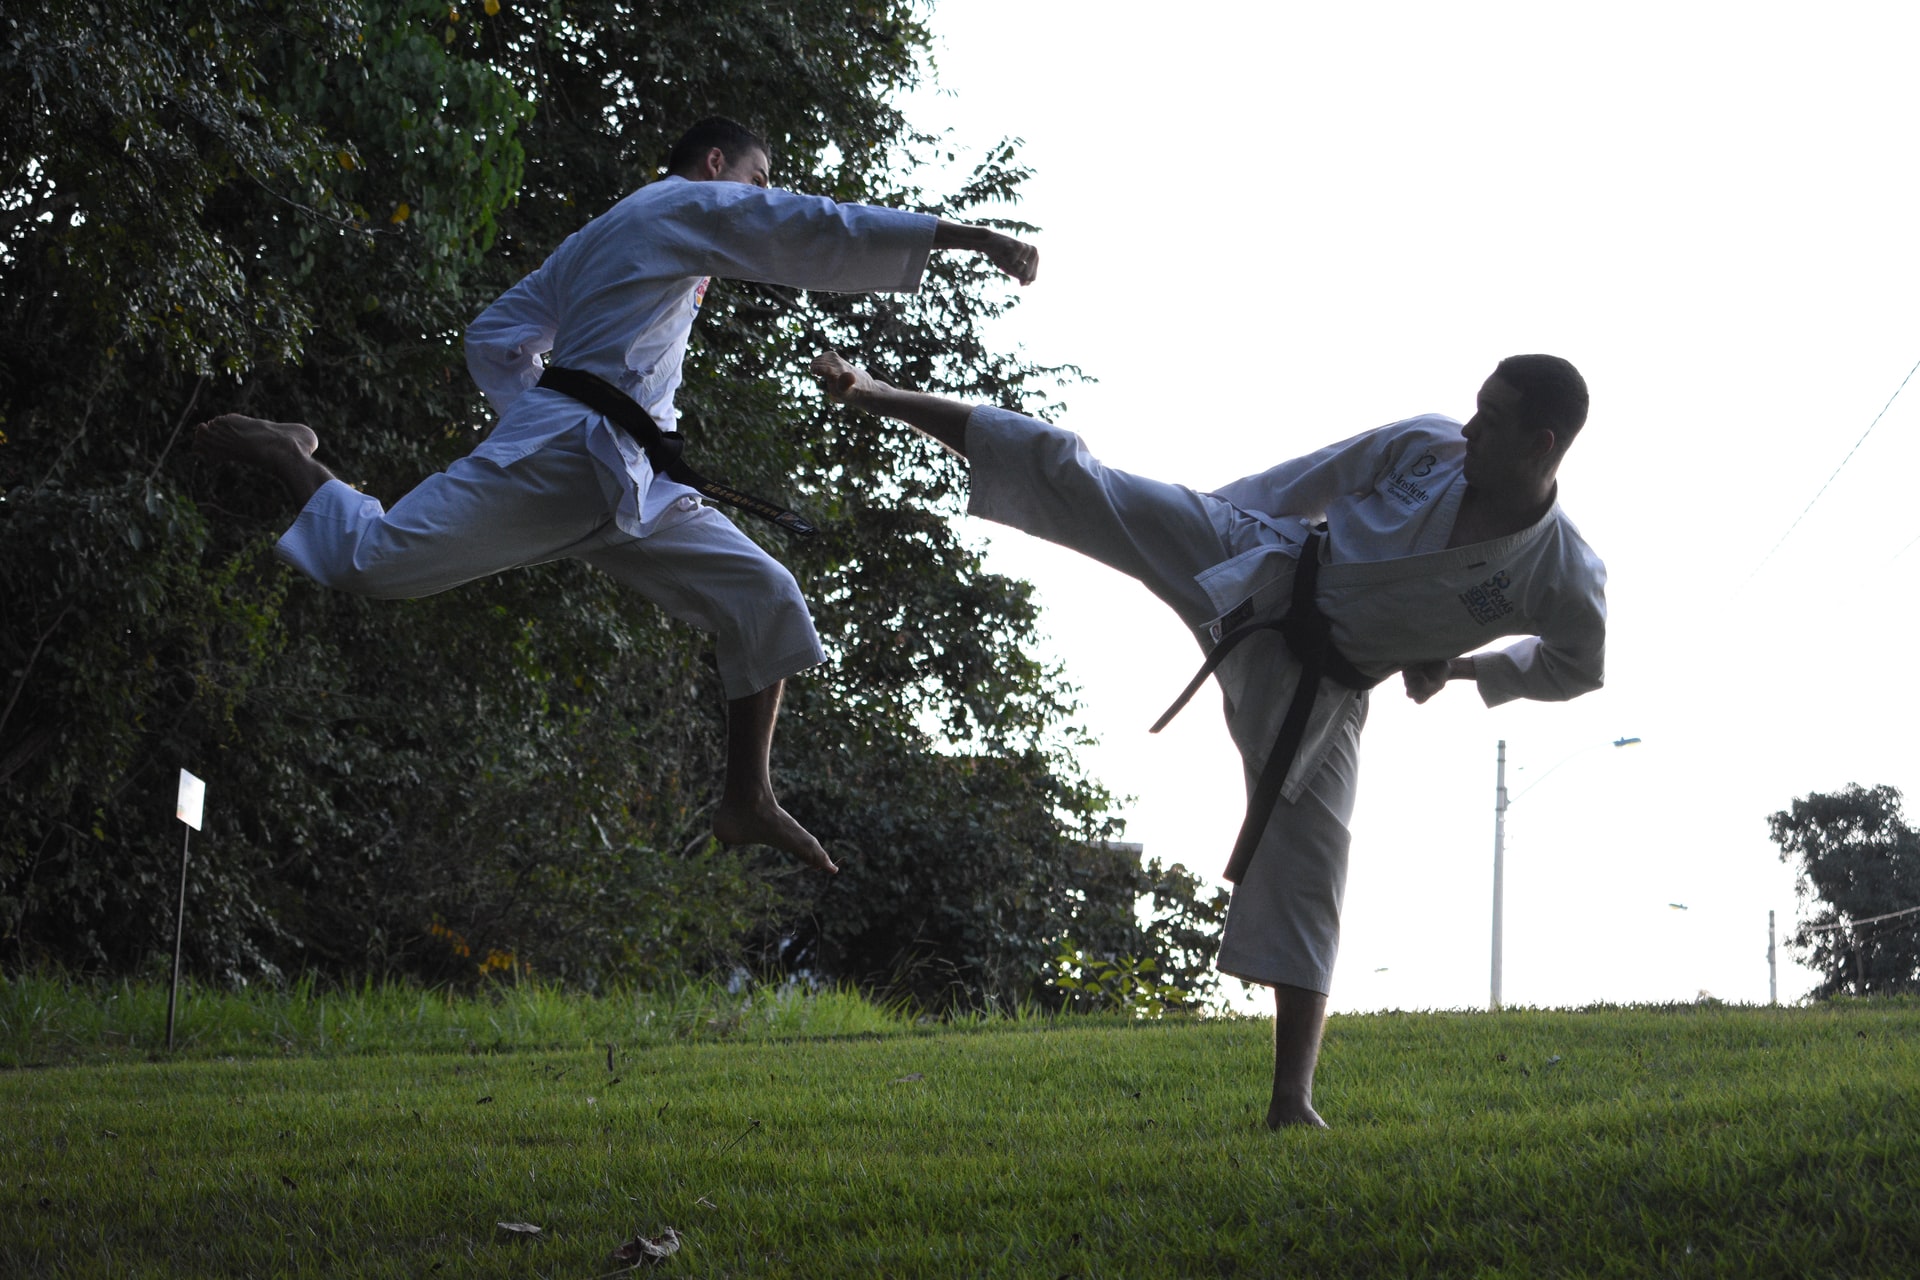 El karate es una disciplina que puede funcionar, tanto para la niñez y adultos, a auto descubrirse y centrar su mente en la salud física y mental. (Foto Prensa Libre: SOON SANTOS en Unsplash).